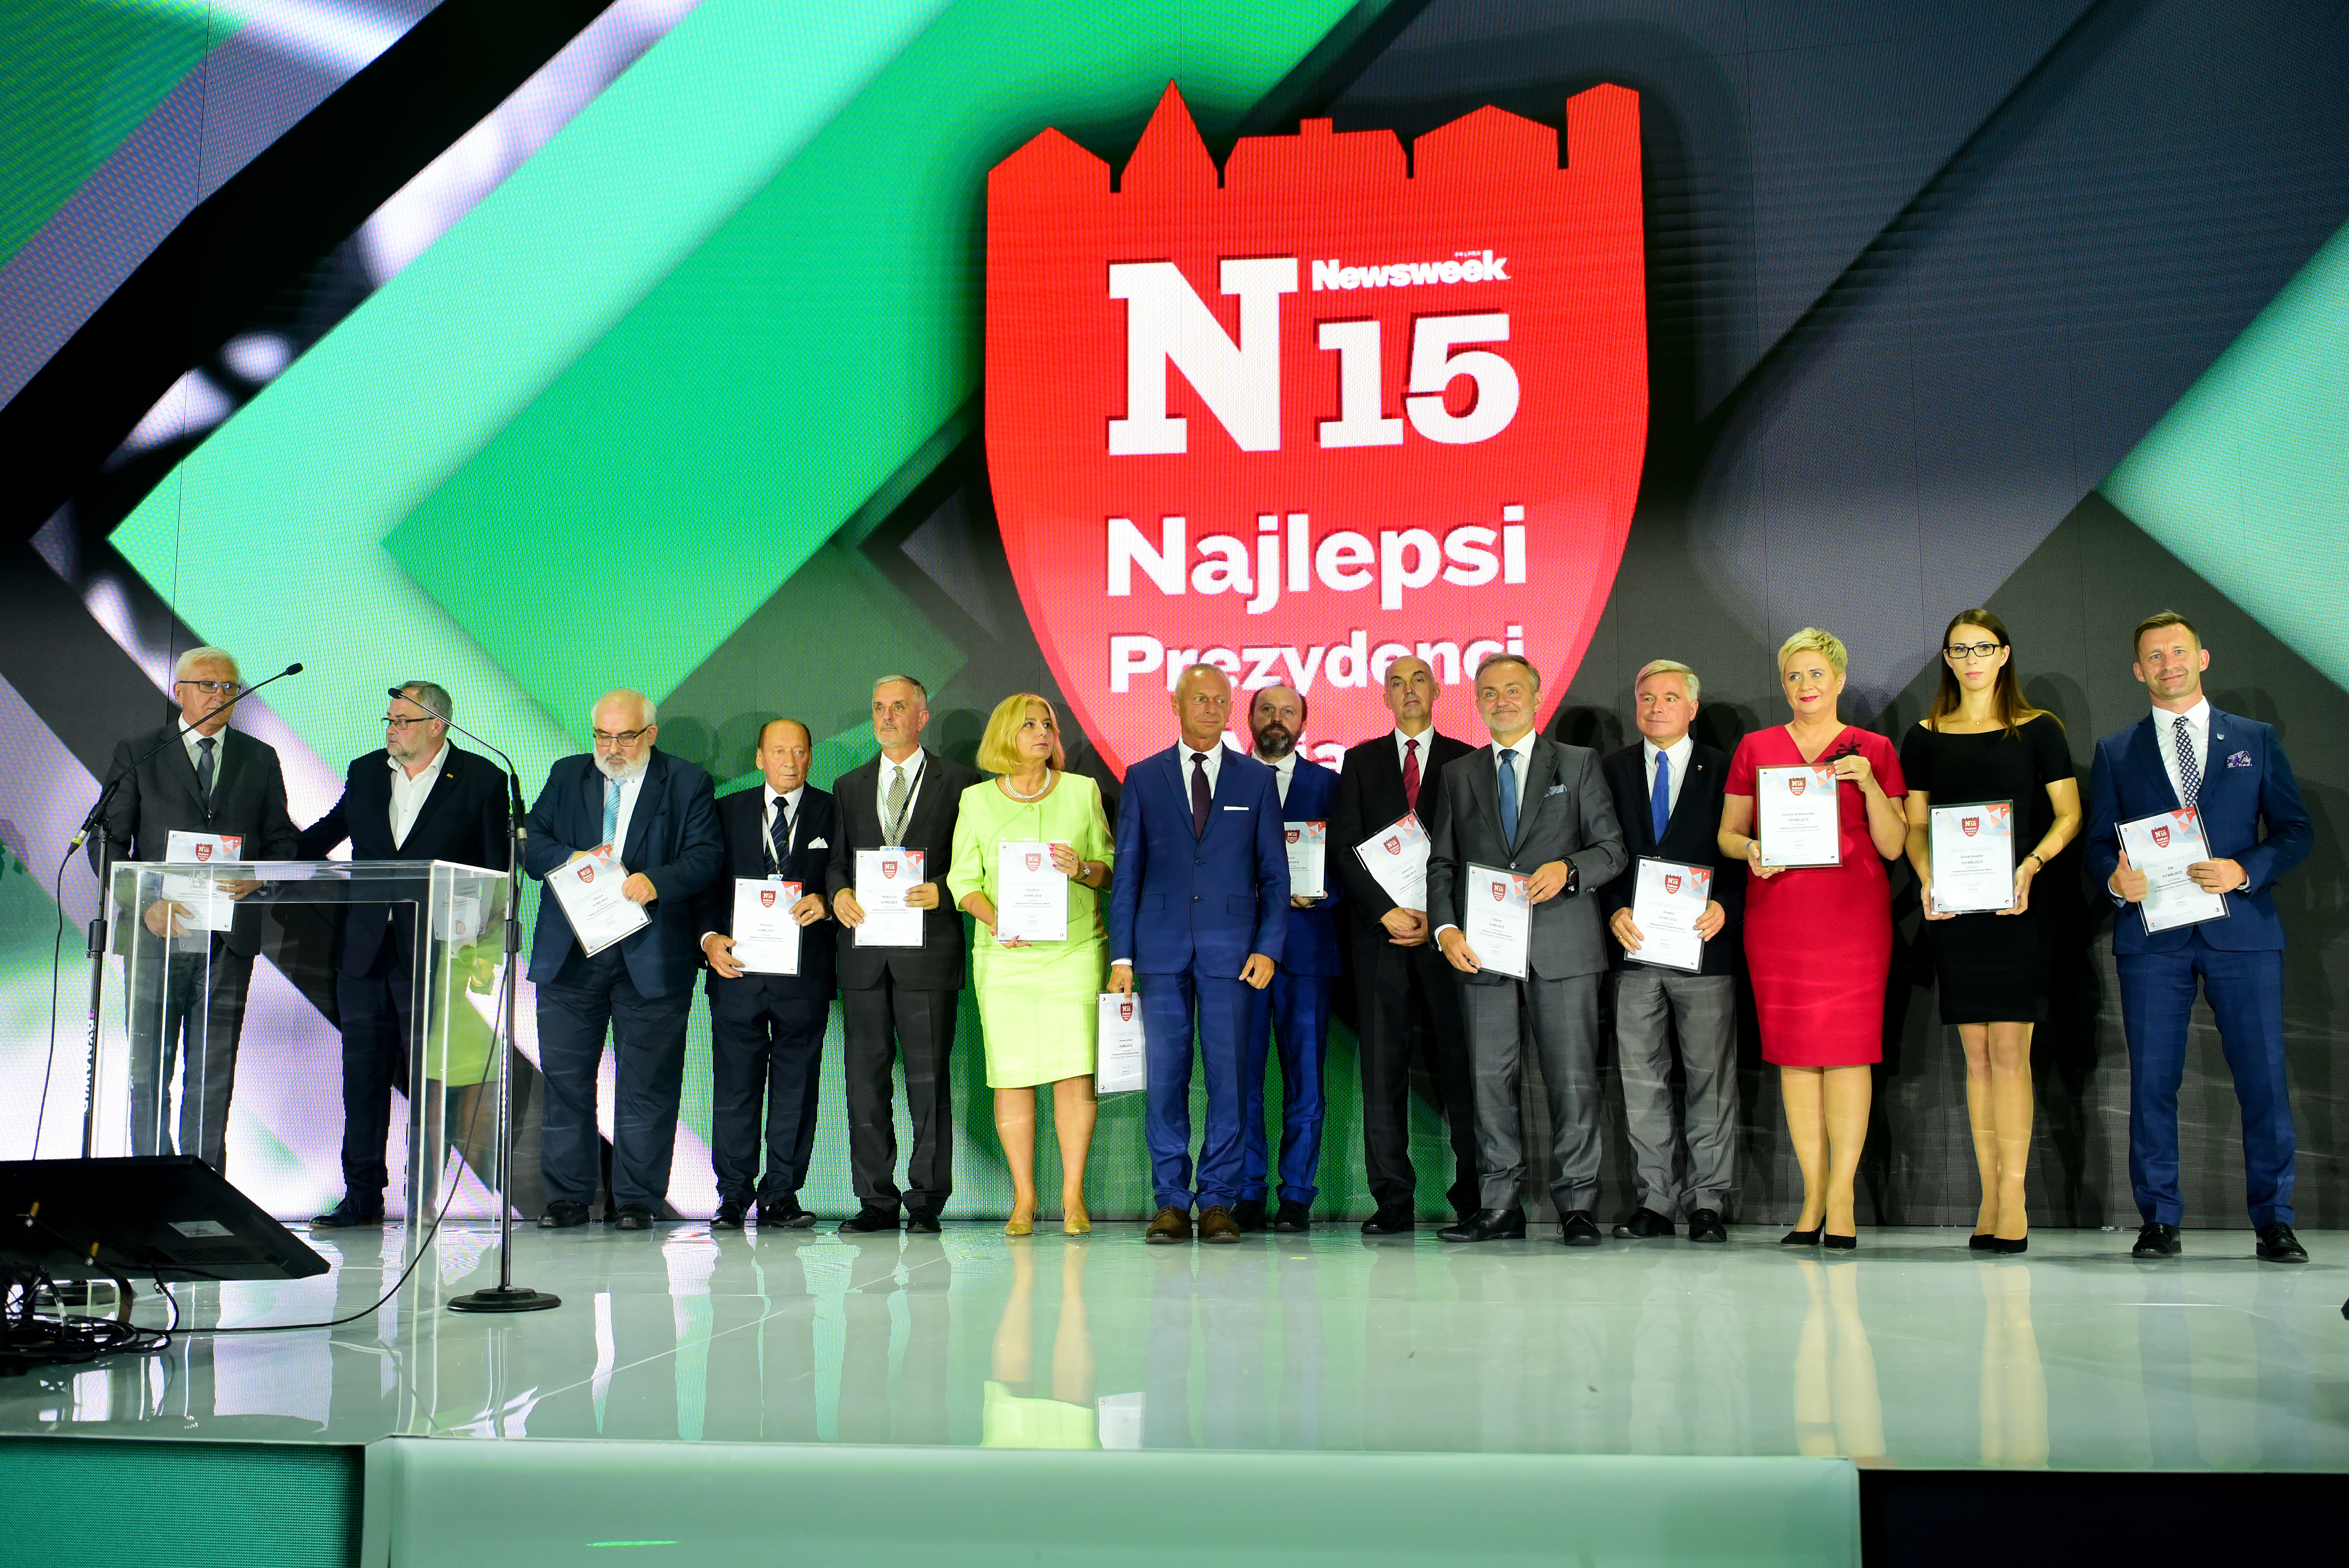 Wszyscy nagrodzeni w rankingu N15 prowadzonym przez Newsweek, fot. kongresregionow.pl